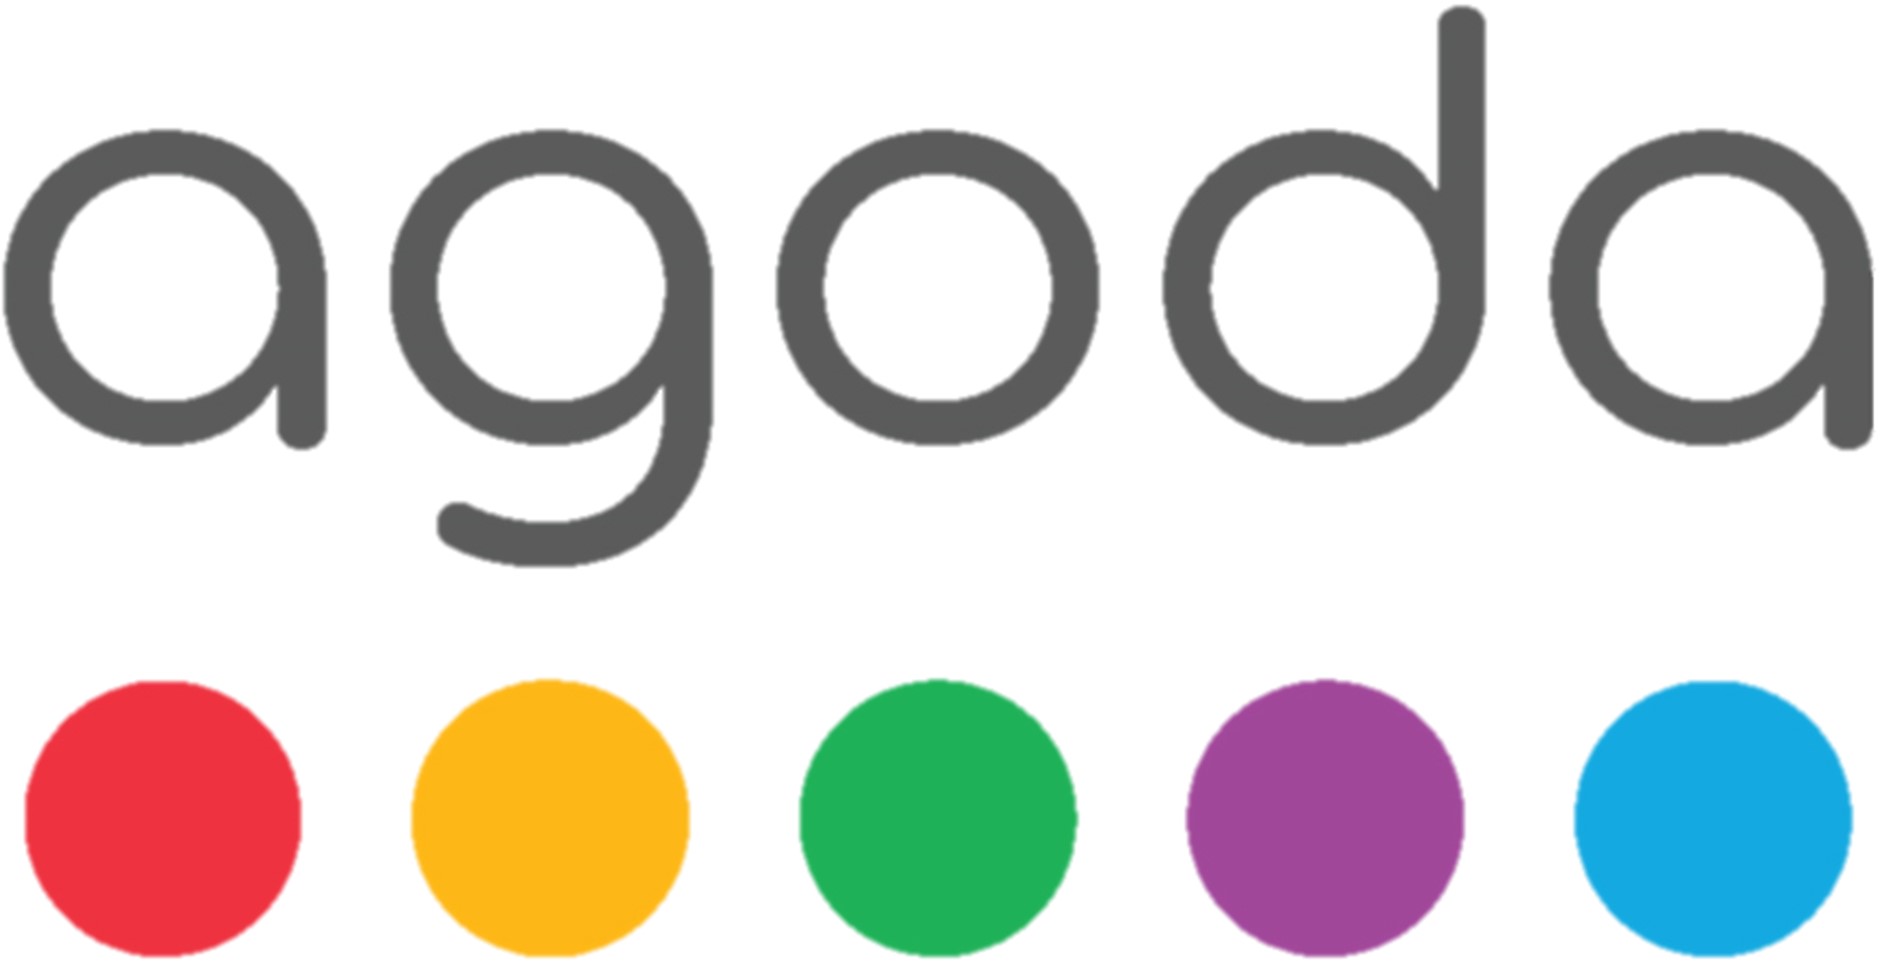 Agoda Brand Logo